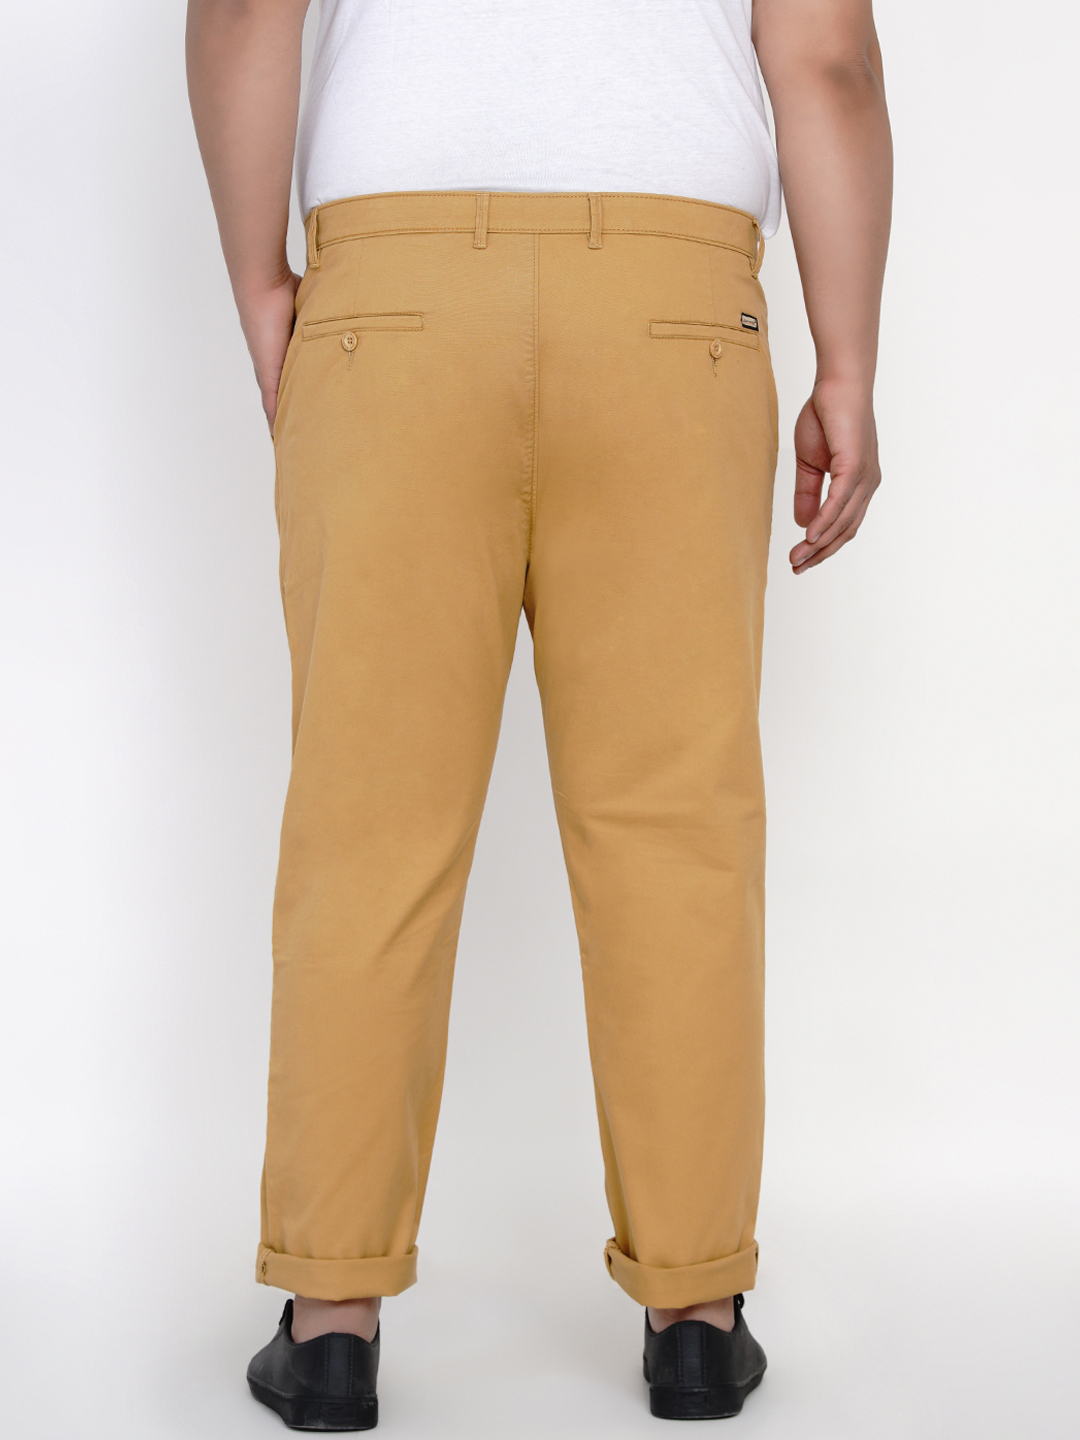 bottomwear/trousers/JPTR2161A/jptr2161a-6.jpg